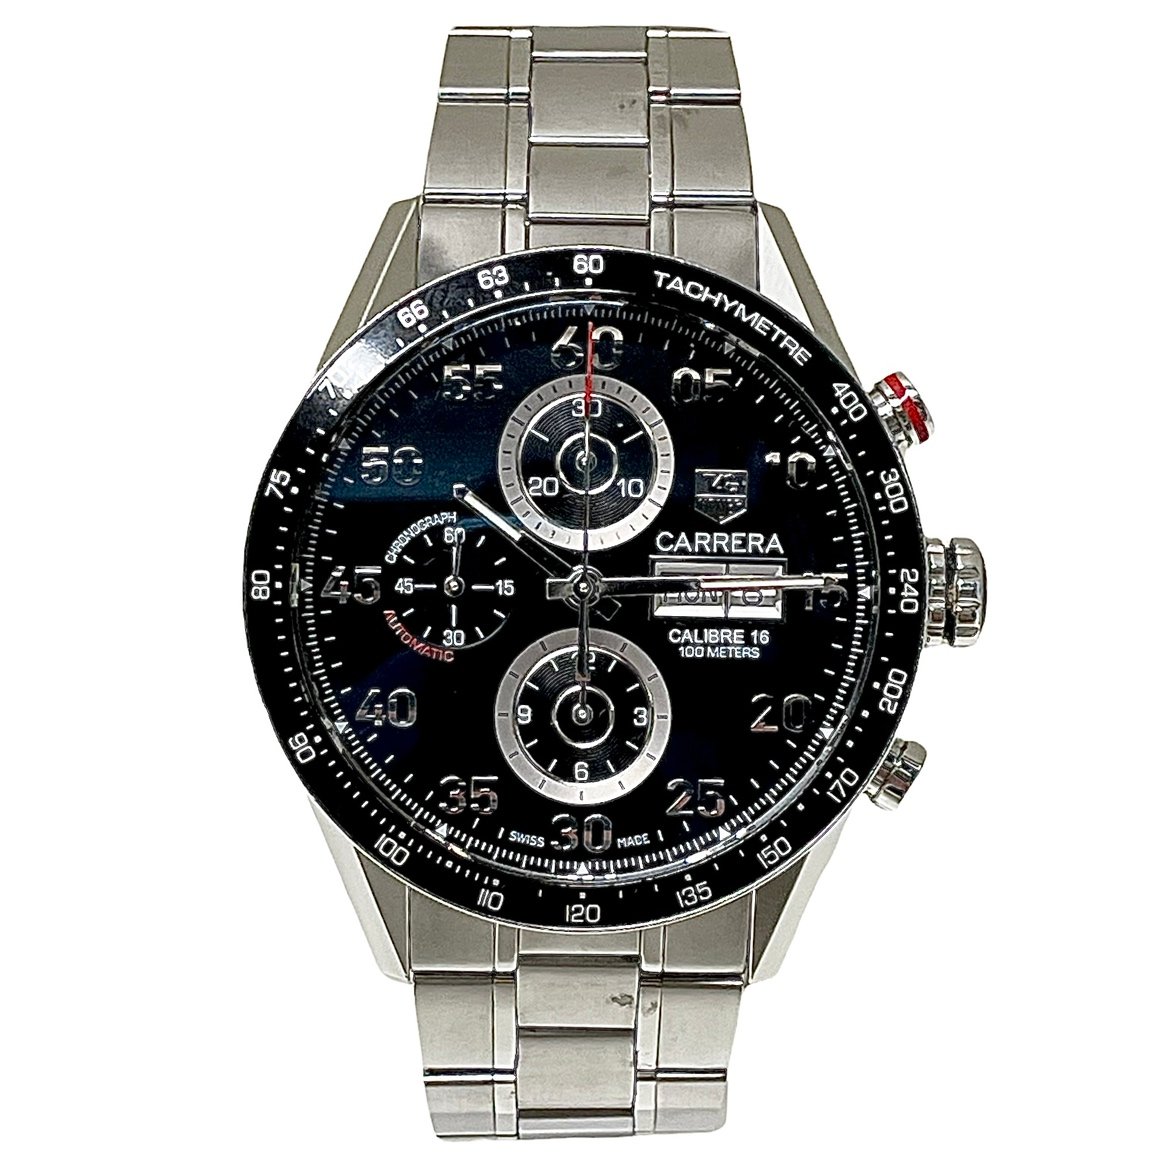 タグホイヤーのCV2A10.BA0796 カレラ タキメーター クロノデイデイト SS/AT 腕時計の買取実績です。